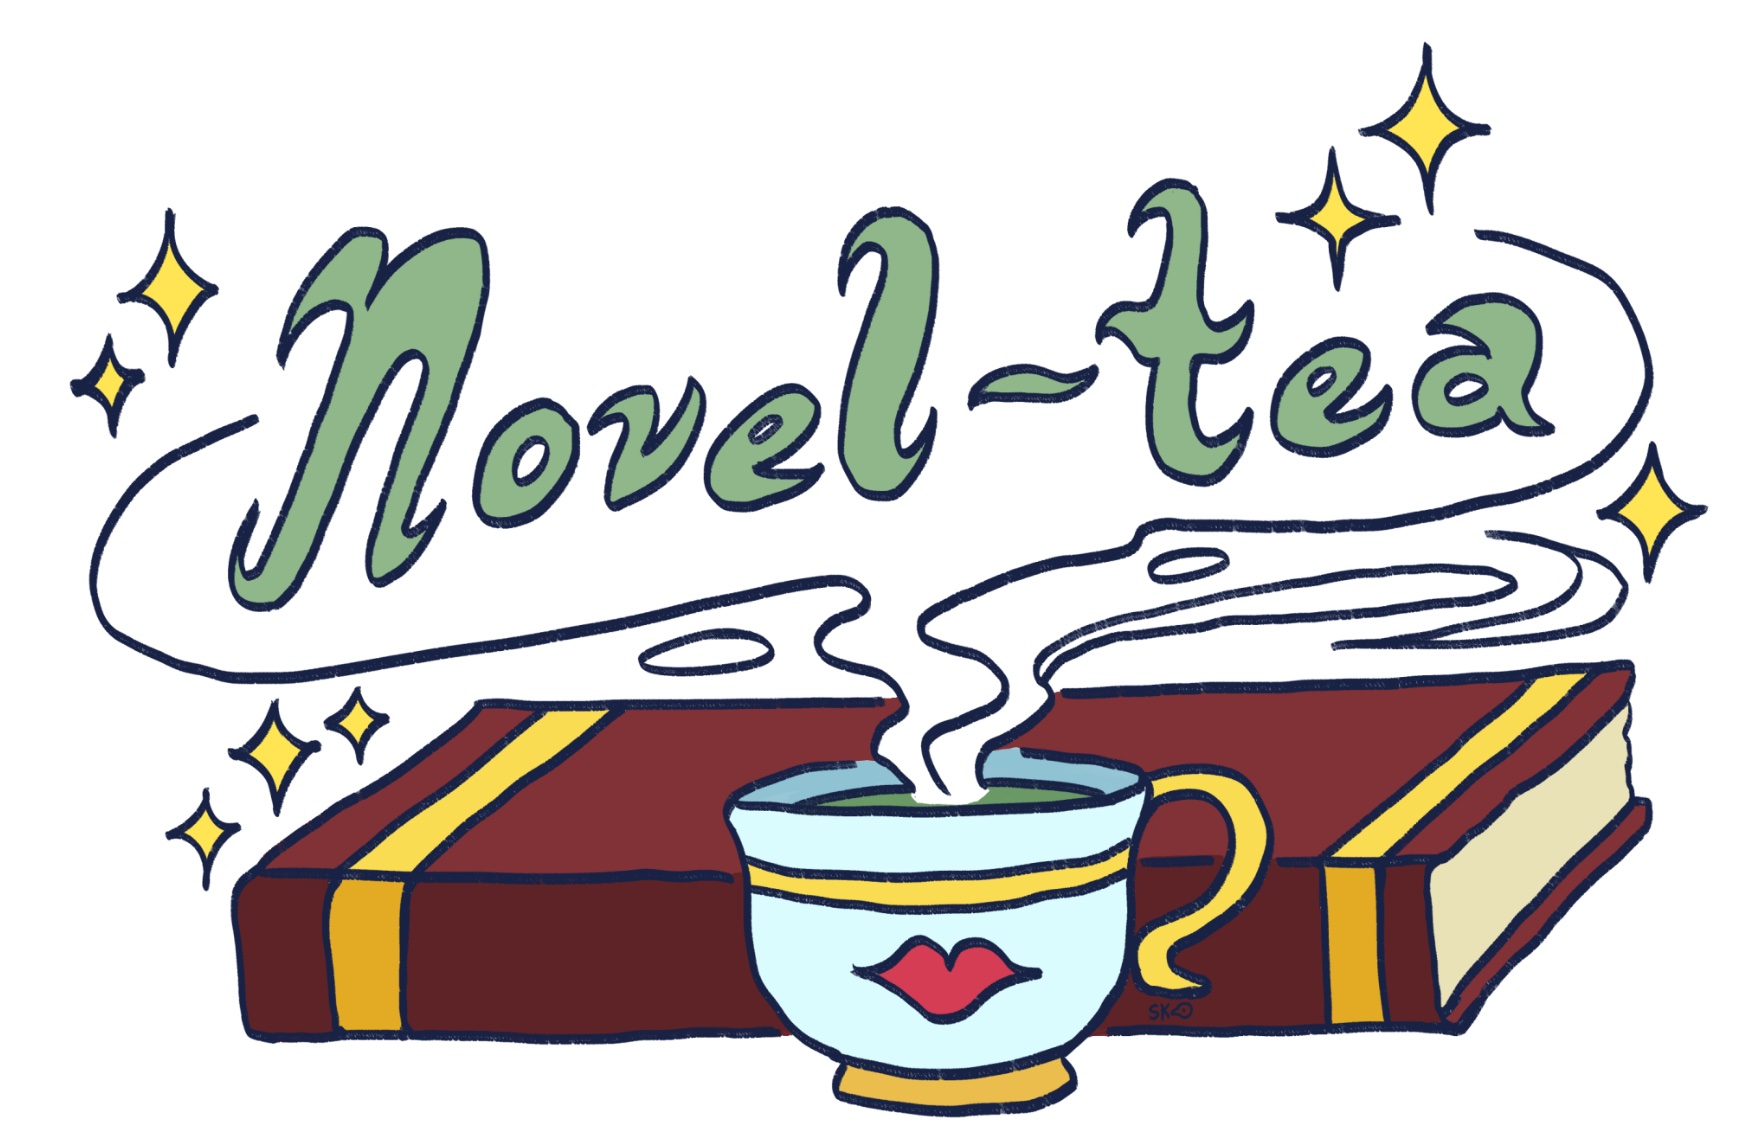 Novel-Tea: The wisdom of YA writing